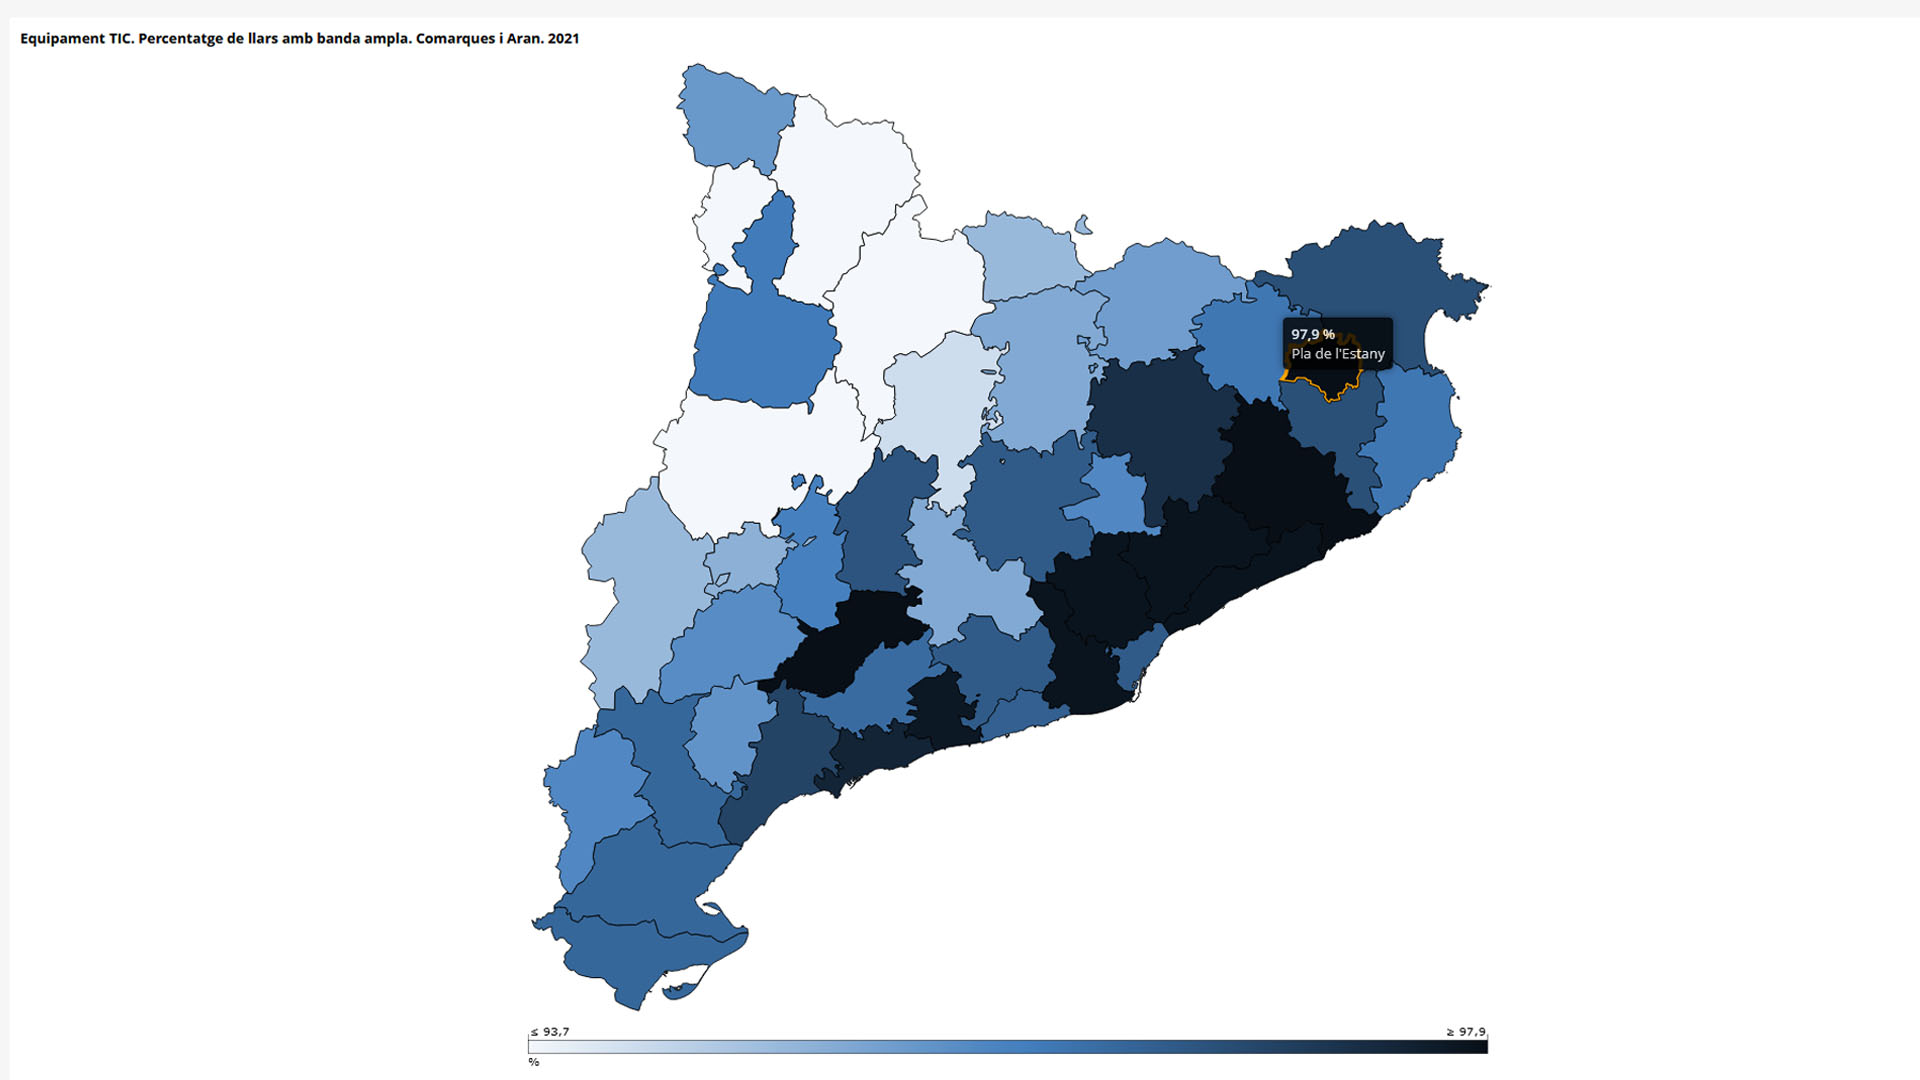 El Pla de l'Estany, segona comarca amb major percentatge de llars amb internet de banda ampla (97,9%)